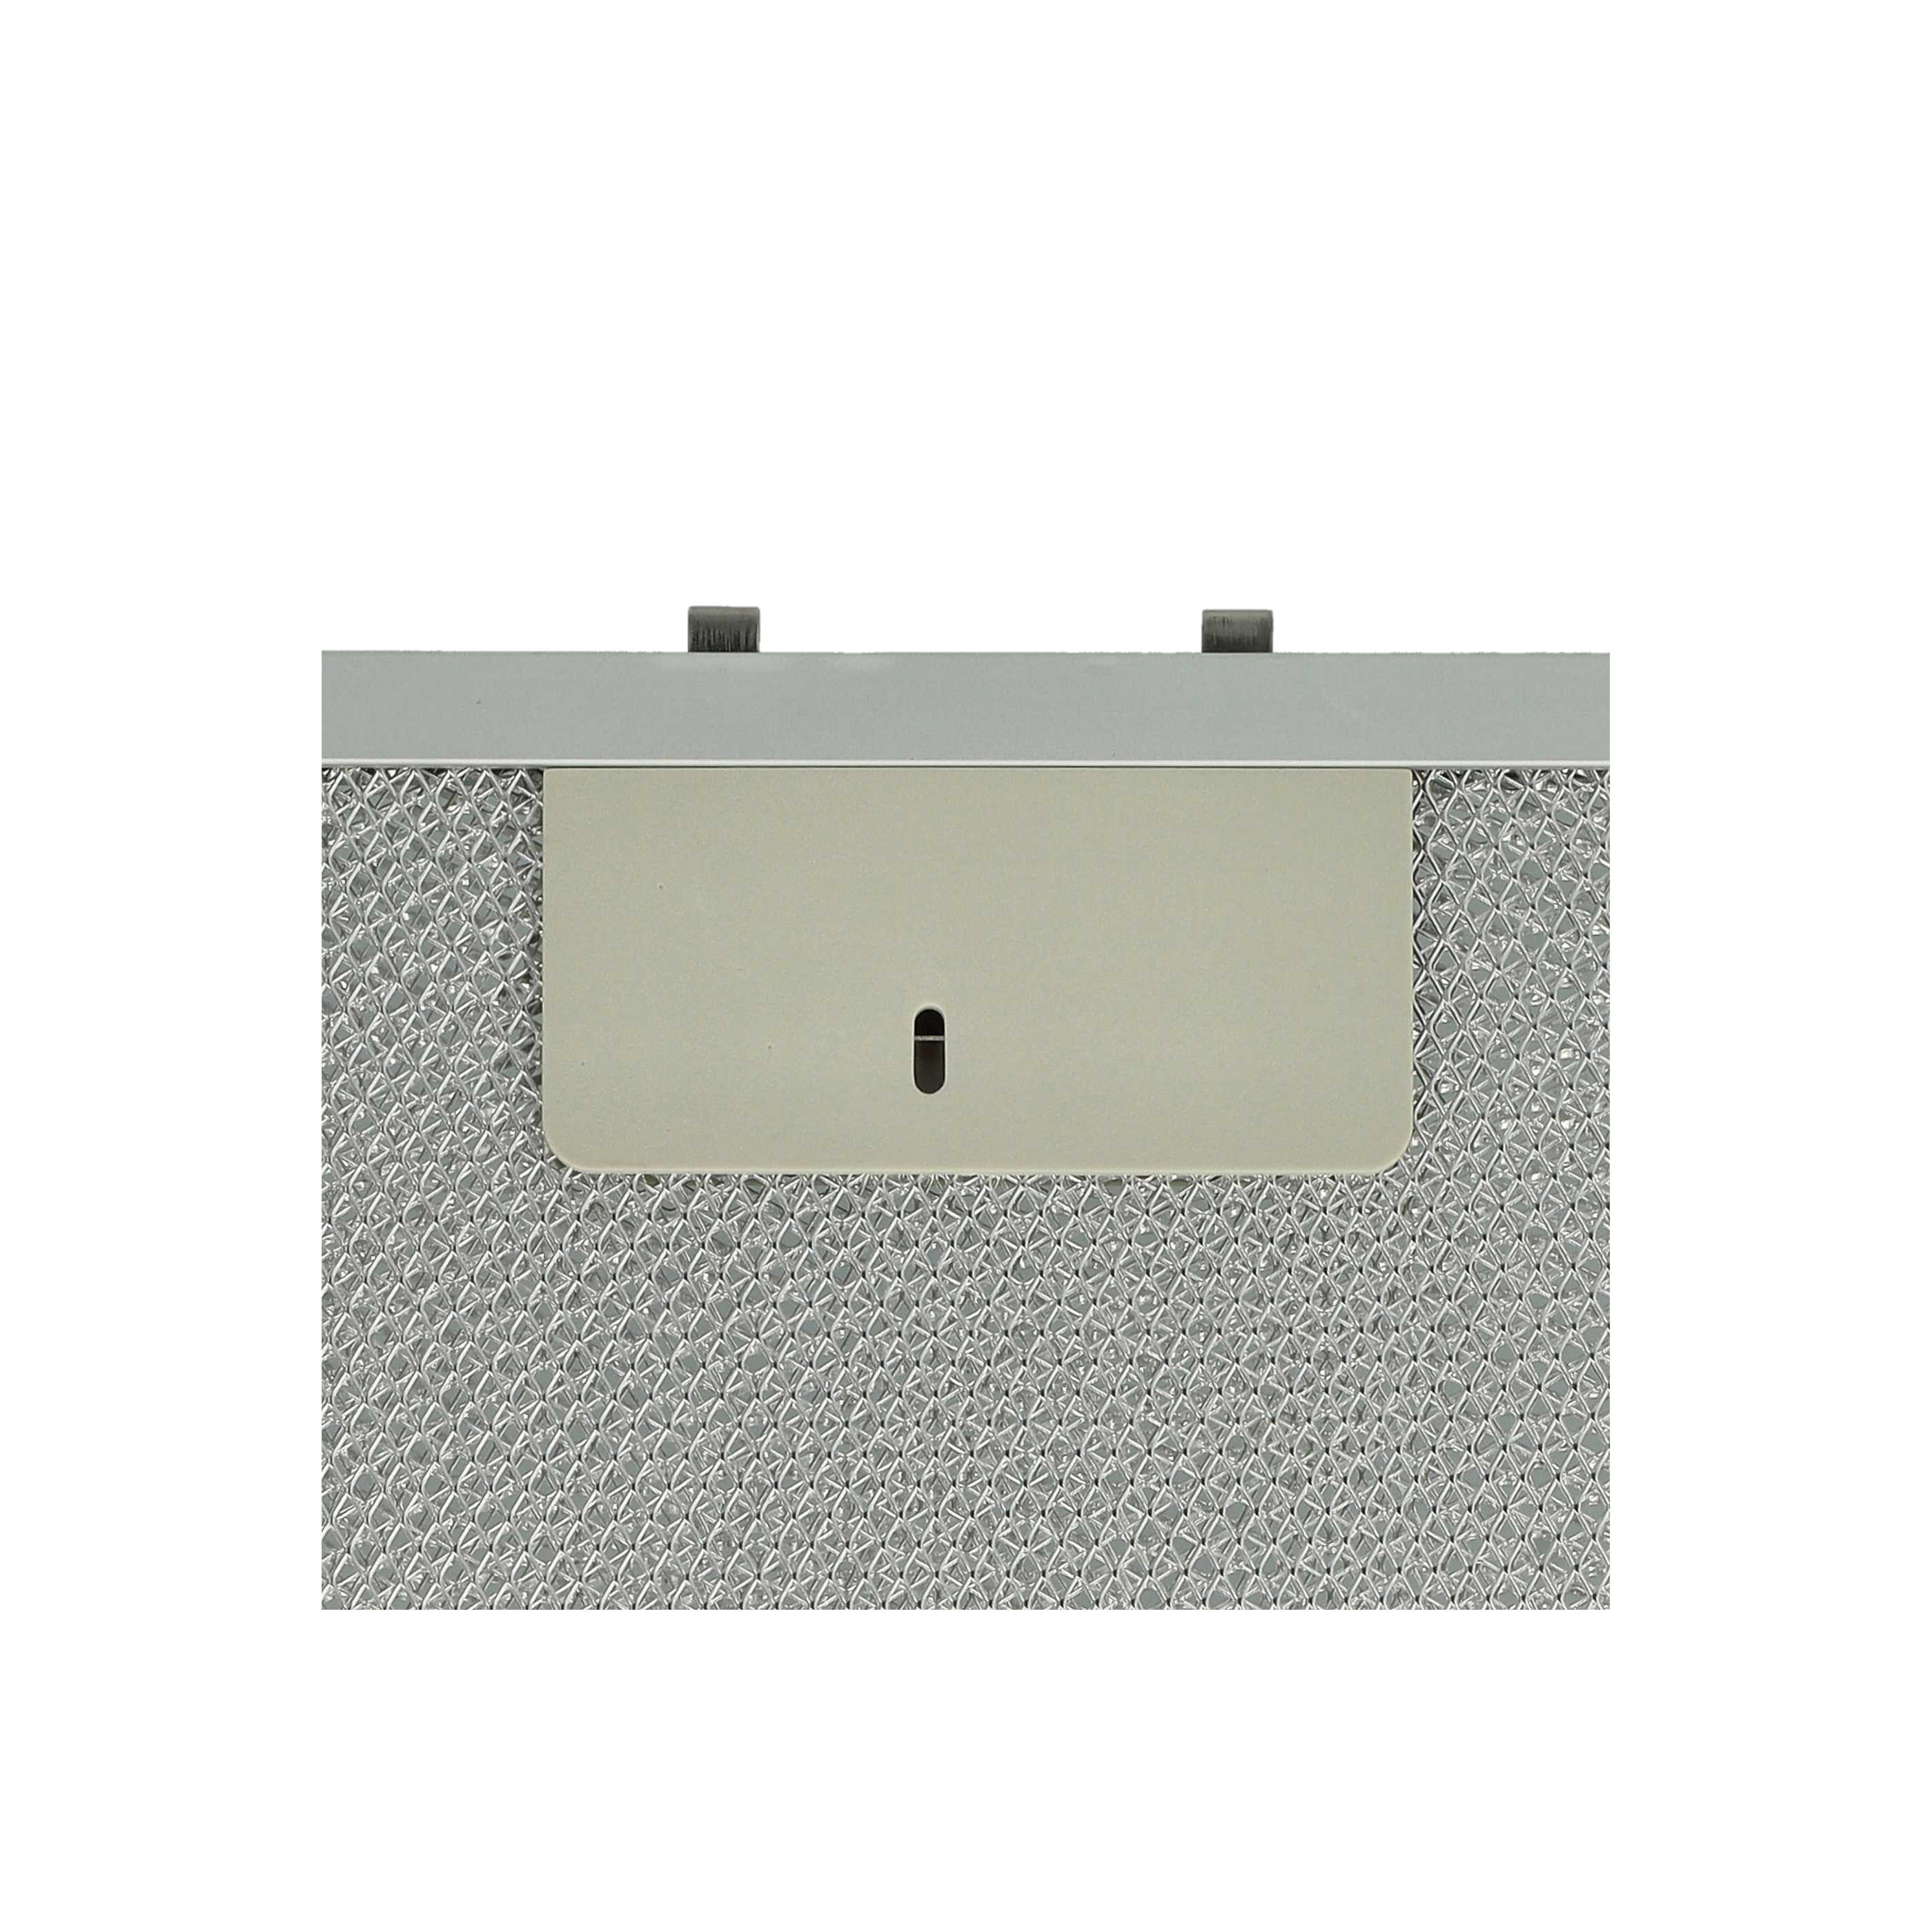 2x Dunstabzugshaube Metallfettfilter als Ersatz für AEG 4055101671 u.a.